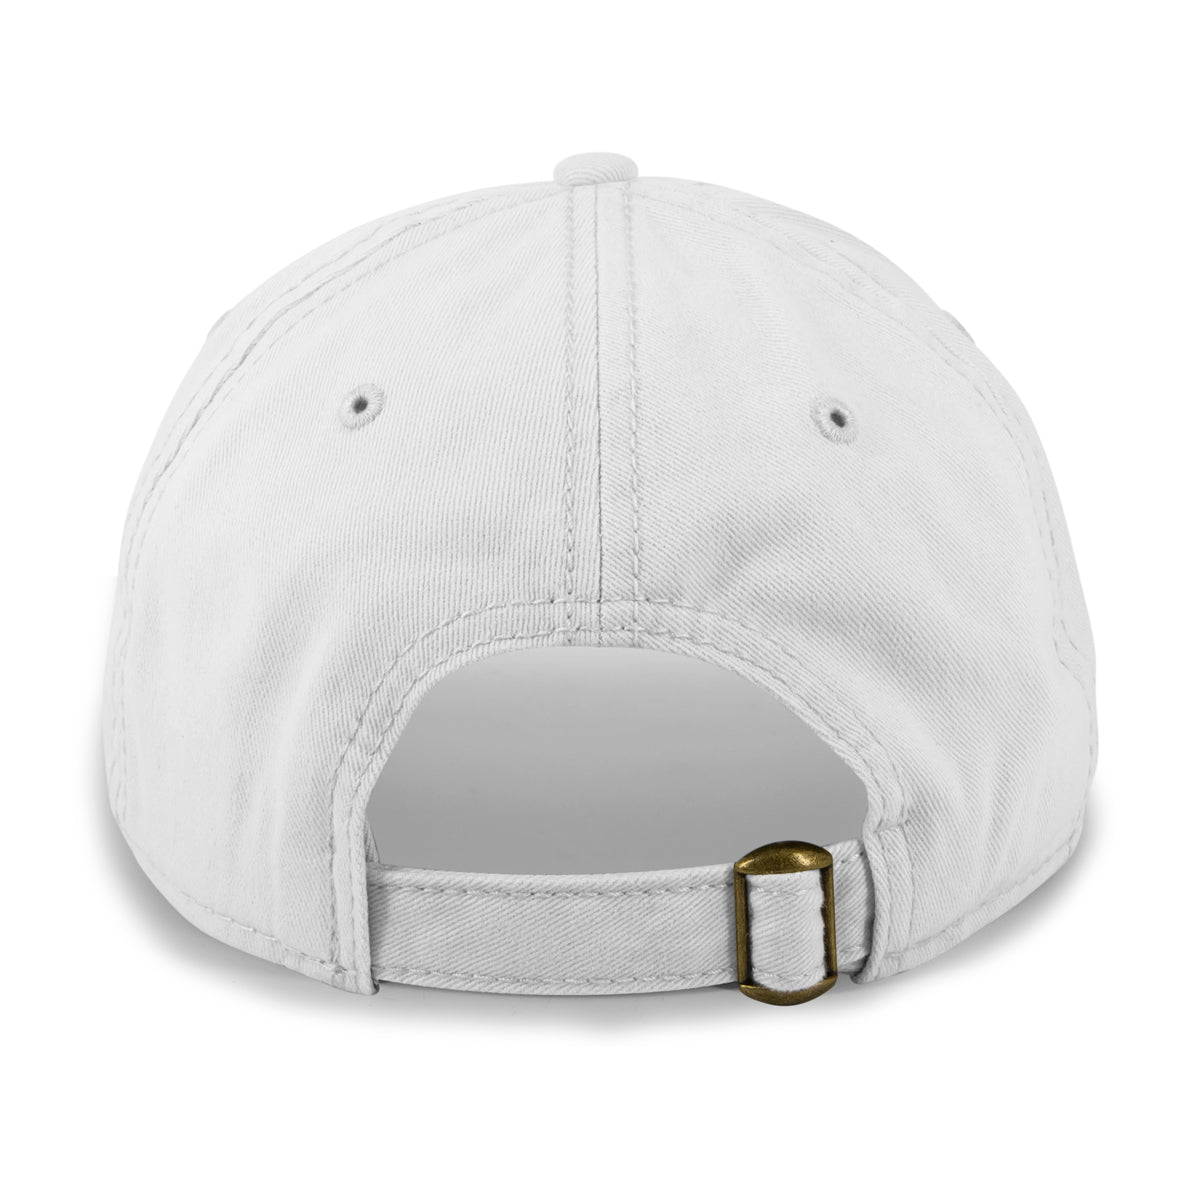 VT Circle Emblem Dad Hat